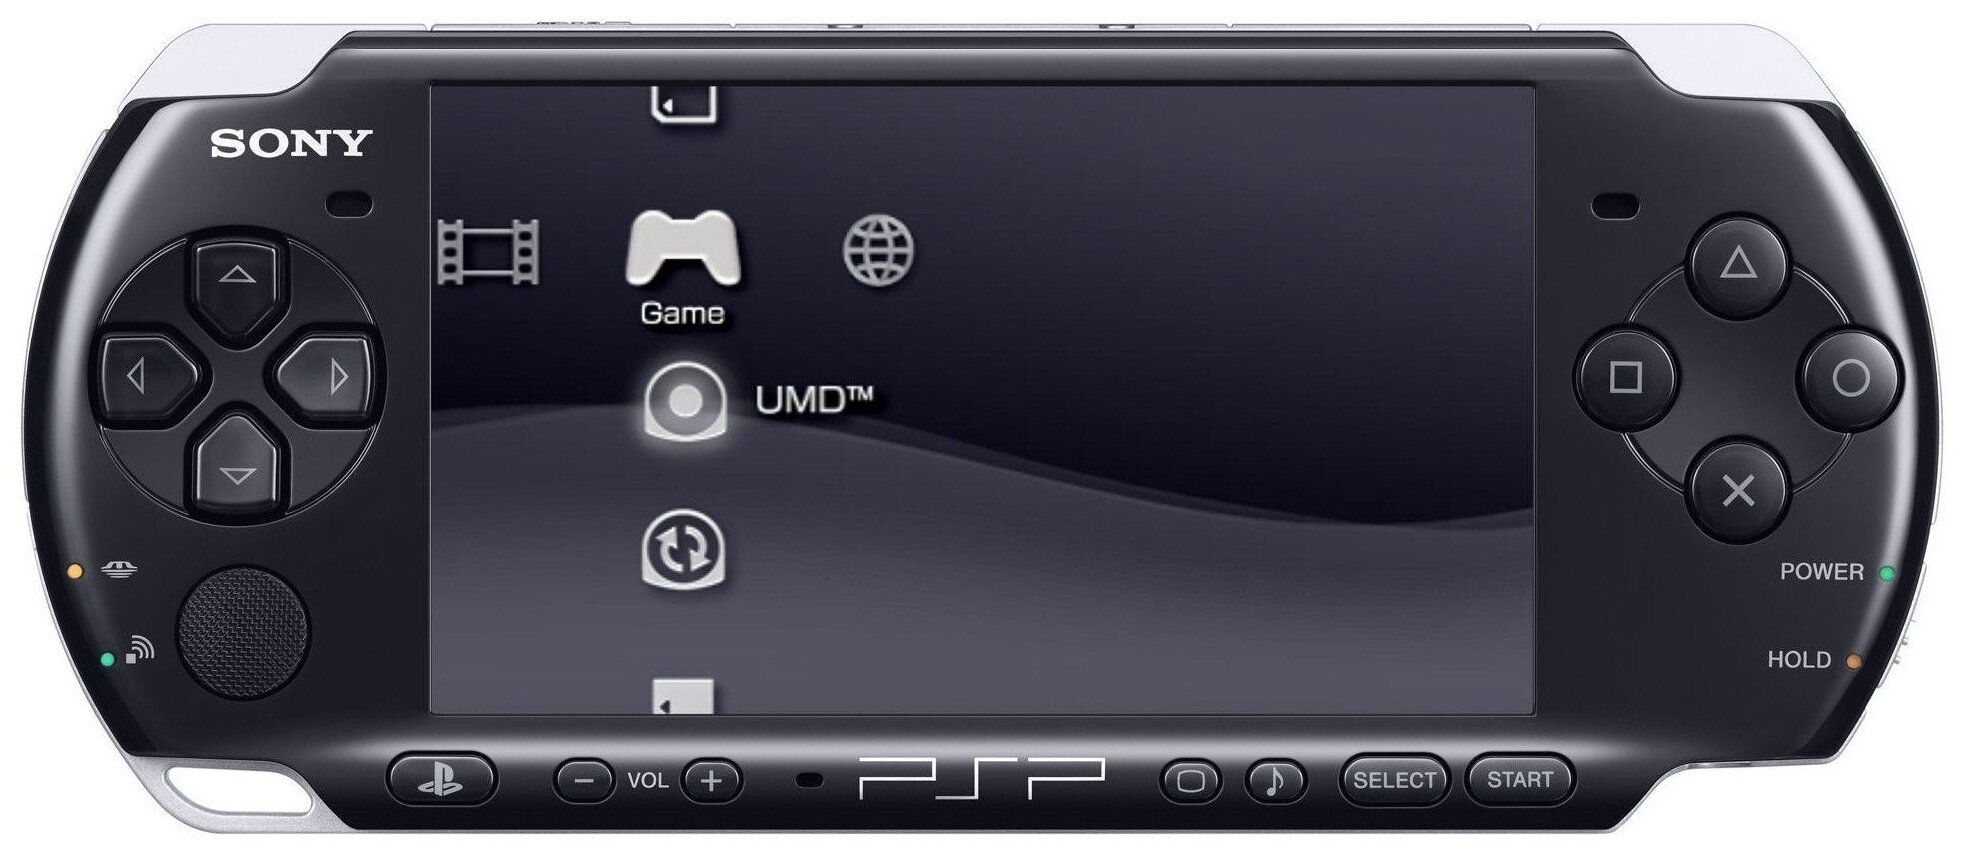 Игровая приставка Sony PlayStation Portable Bright (PSP-3000) SSD, без игр, черный